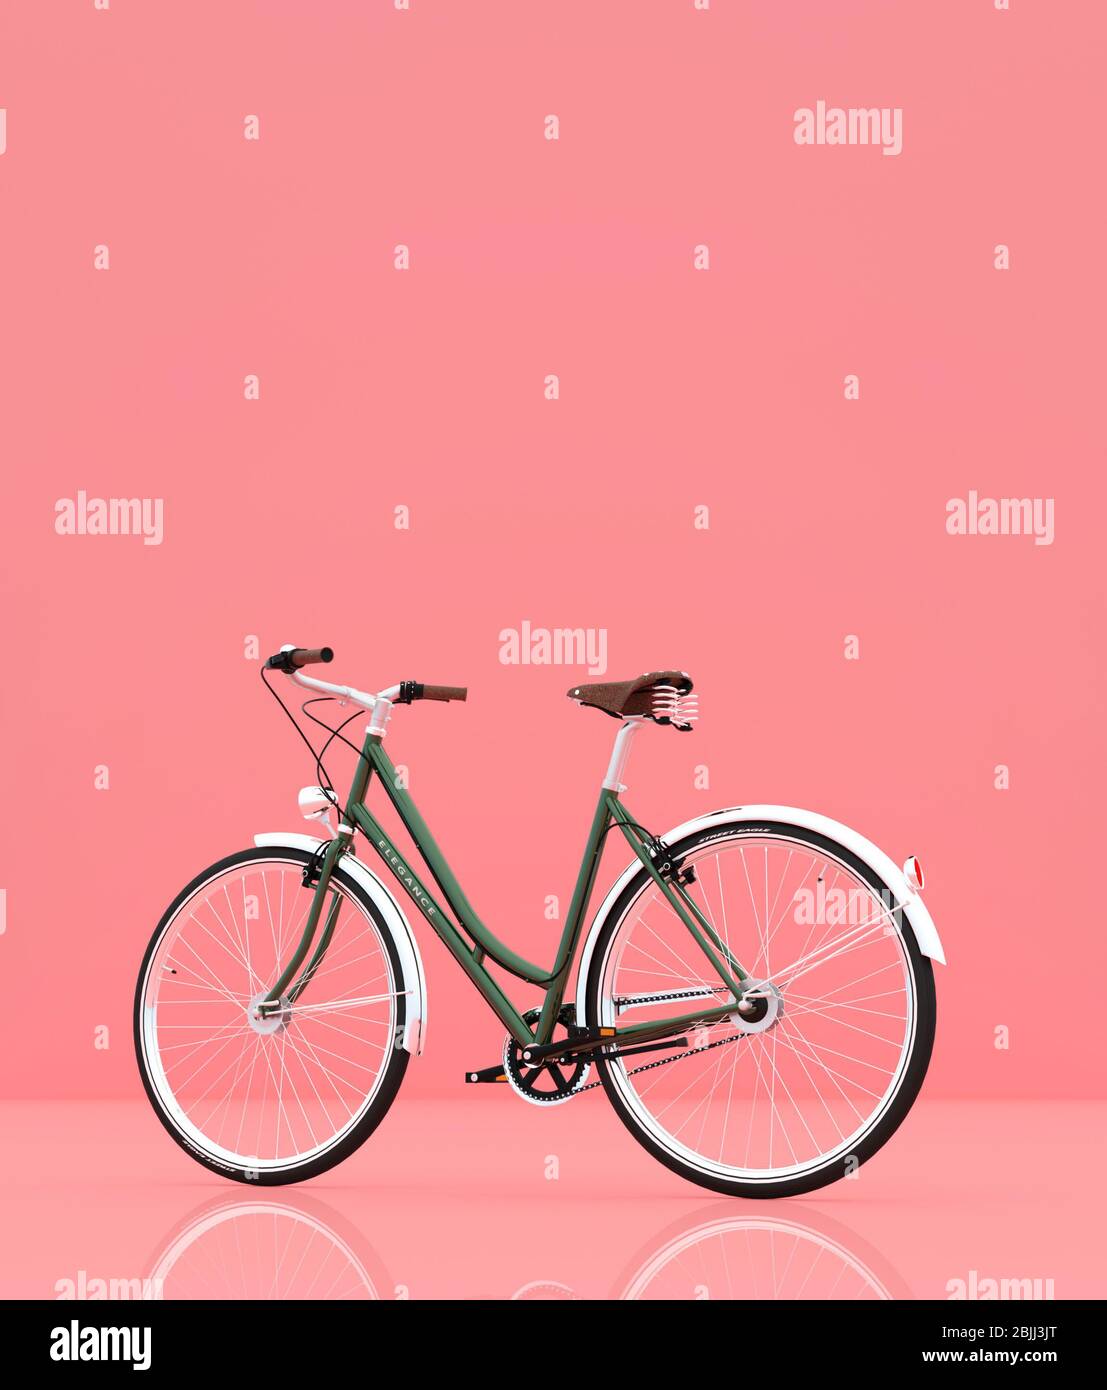 Fahrrad auf Pastell-Farbe Hintergrund, 3d-Rendering Stockfotografie - Alamy